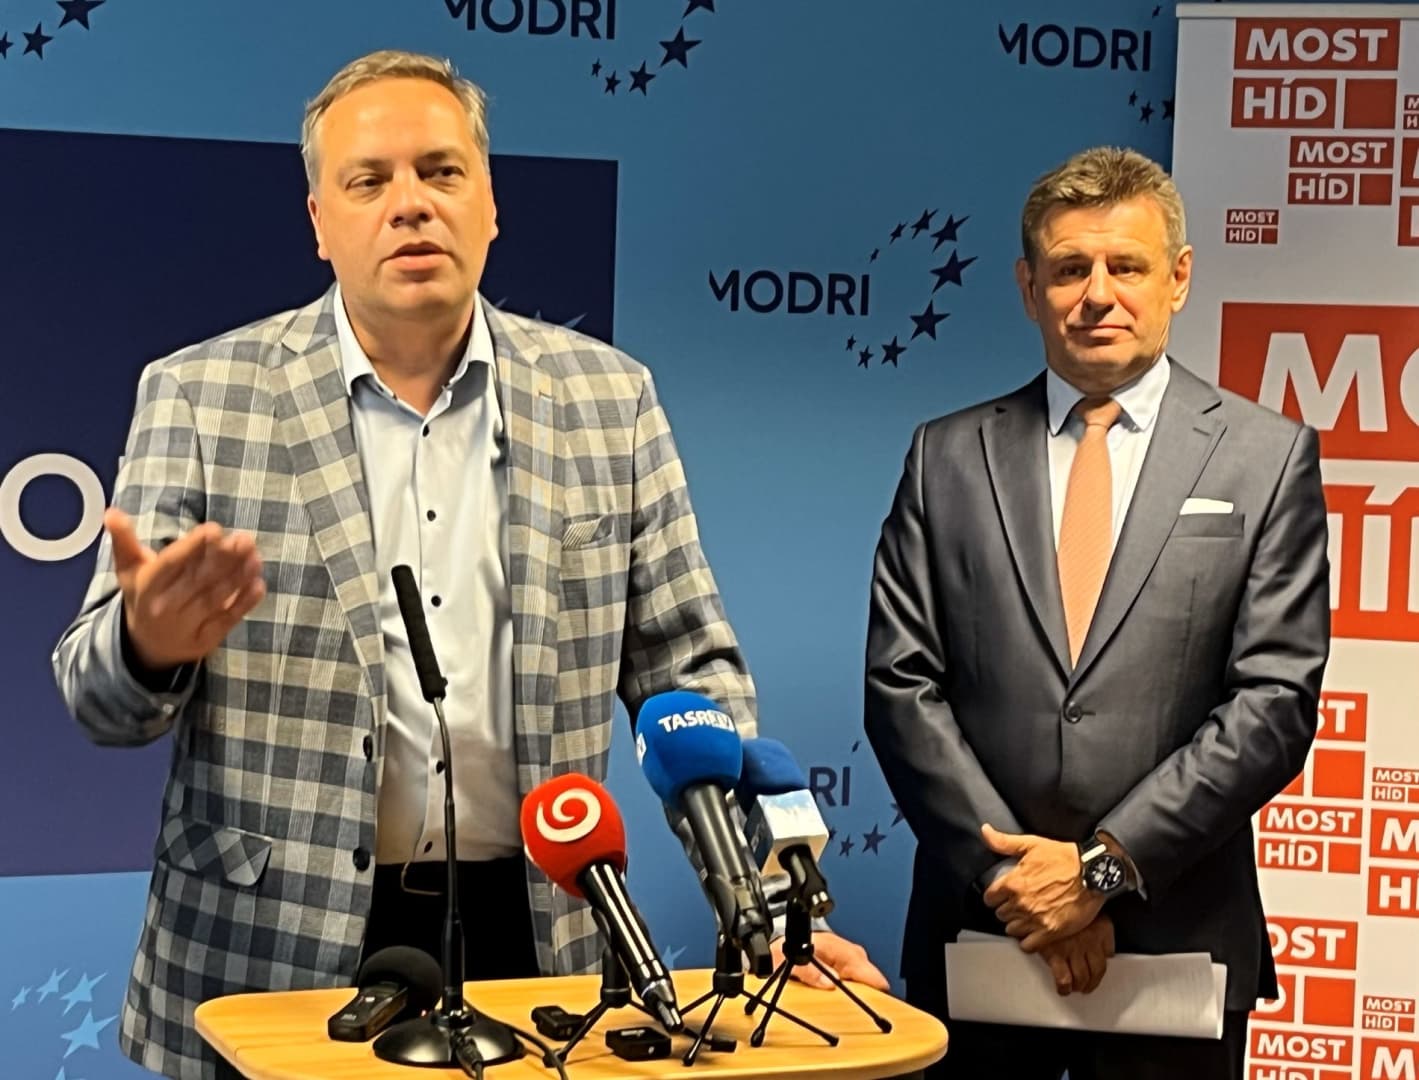 Putyin befolyásolni akarja a szlovákiai választásokat, mert több "Orbánra" lenne szüksége